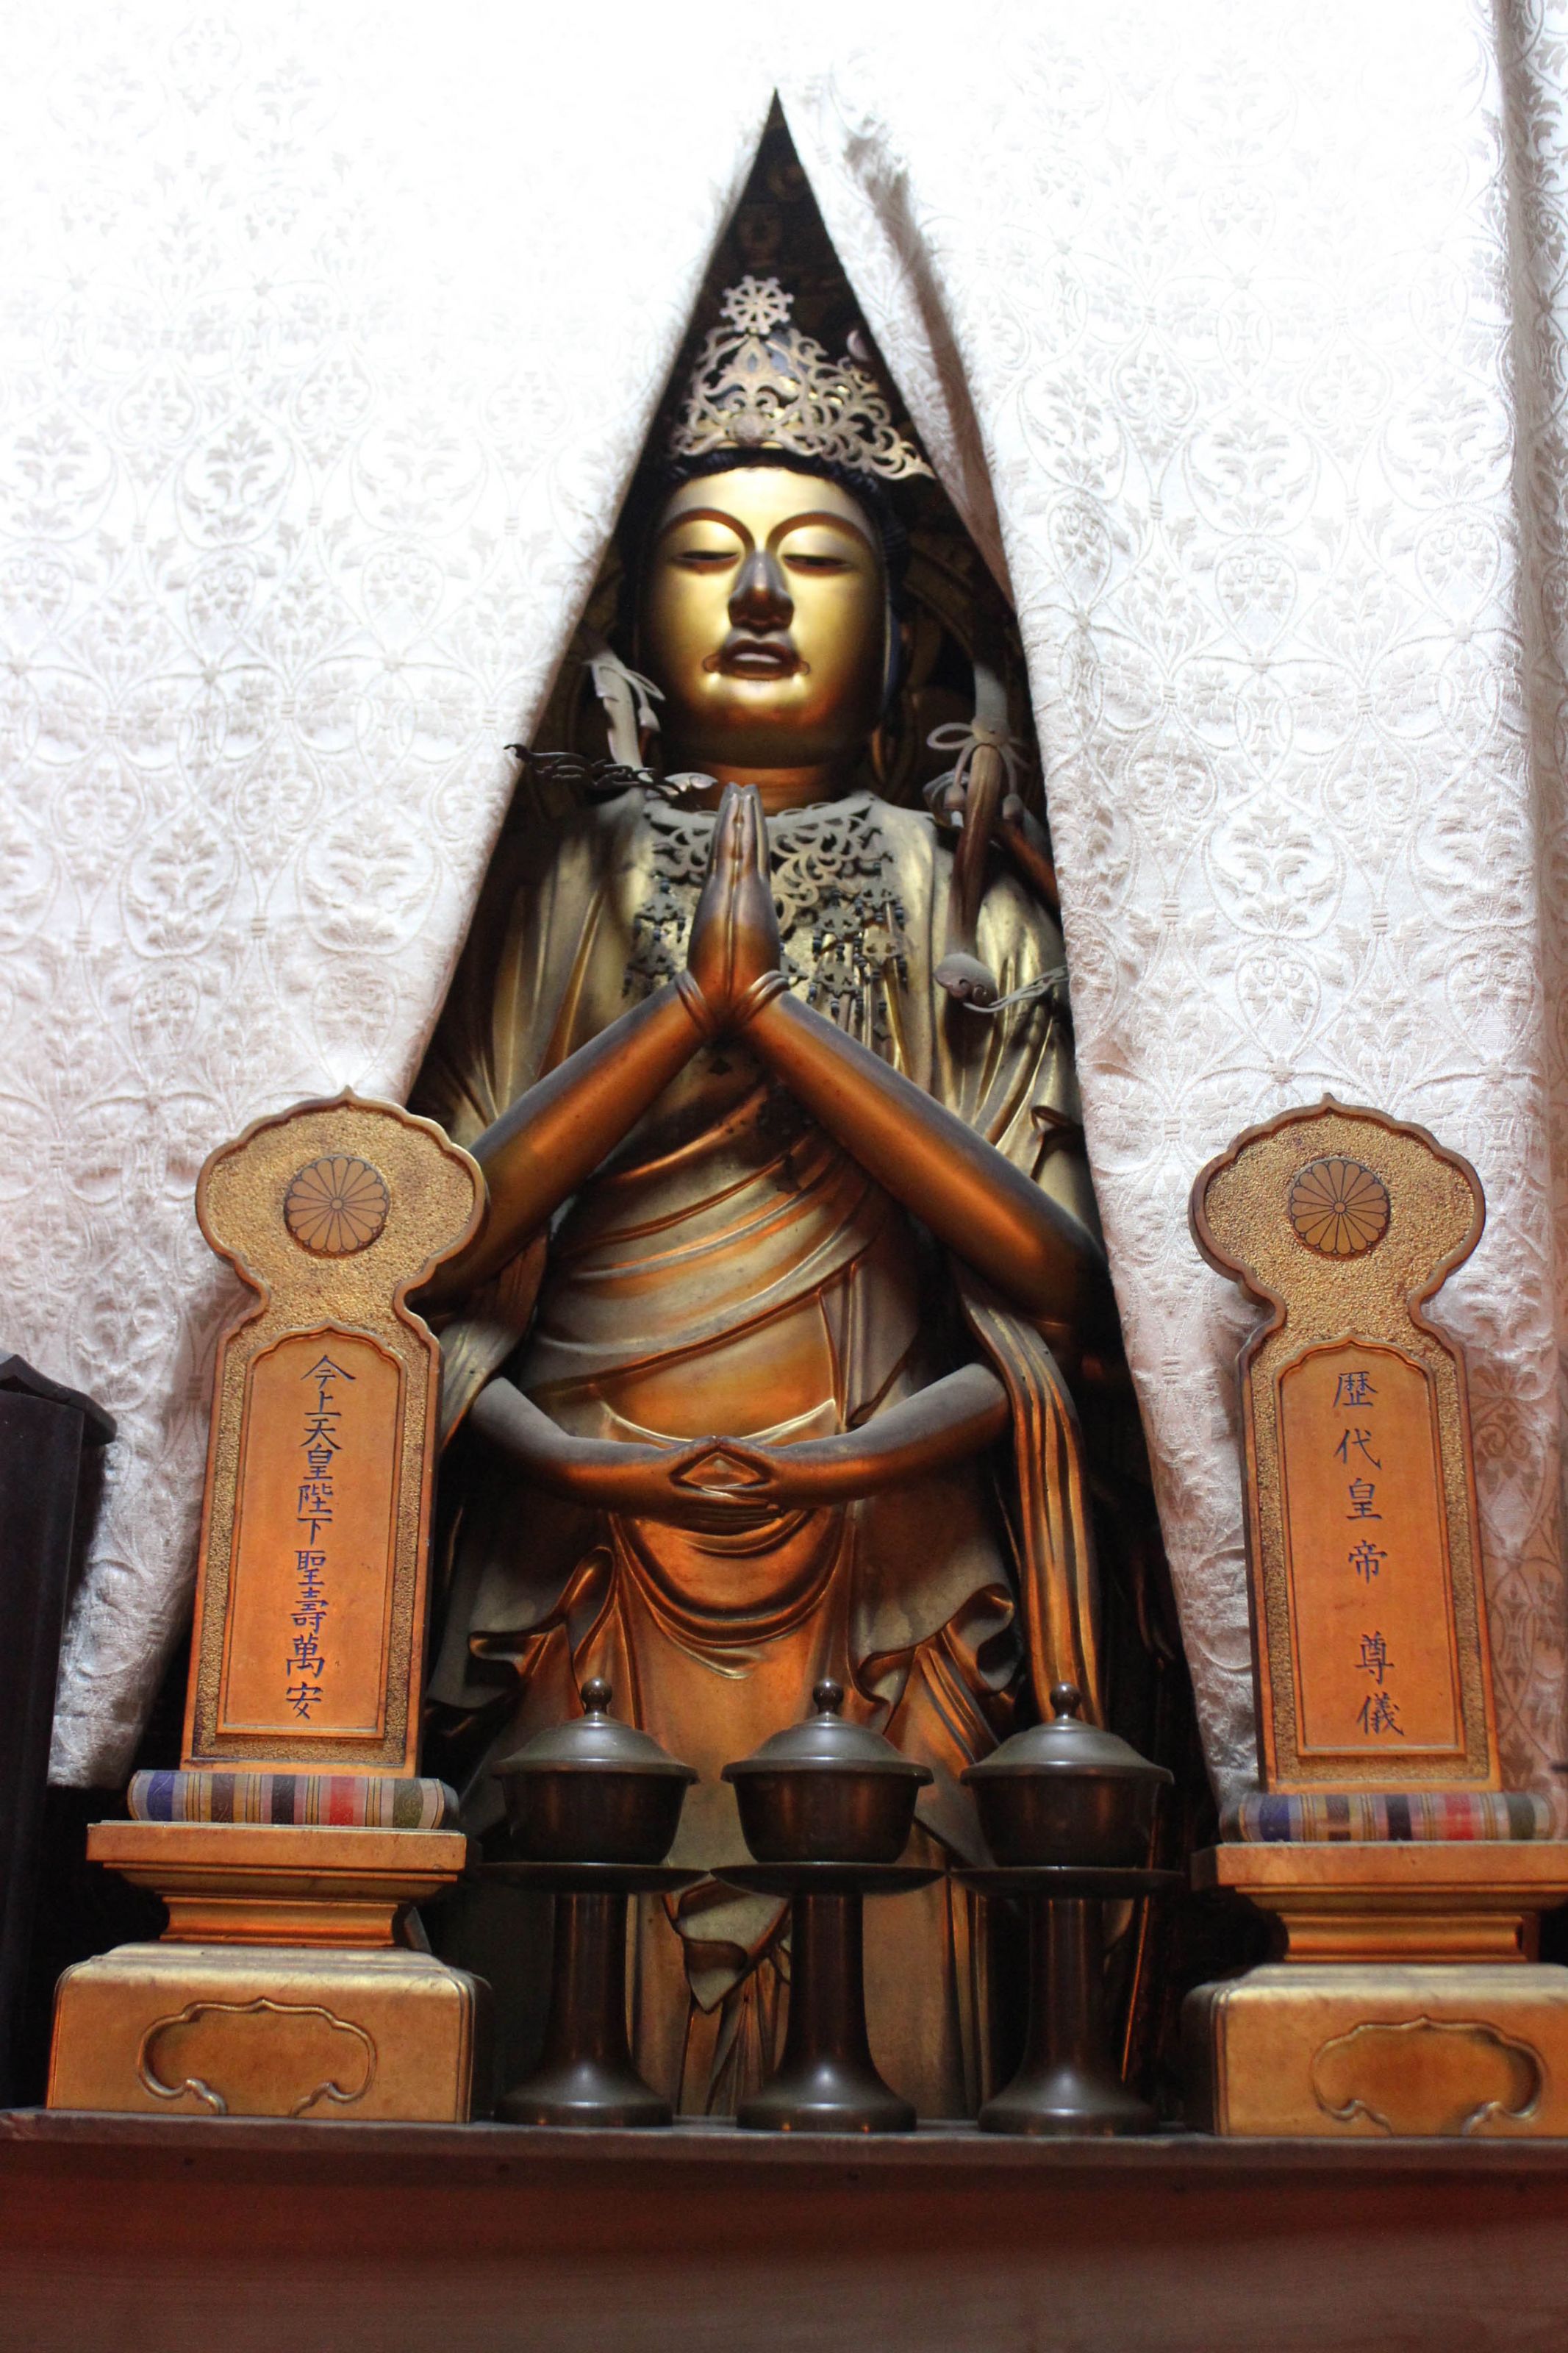 いわれのある岐阜県 中山にある観音寺の千手観音像 達人に訊け 中日新聞web